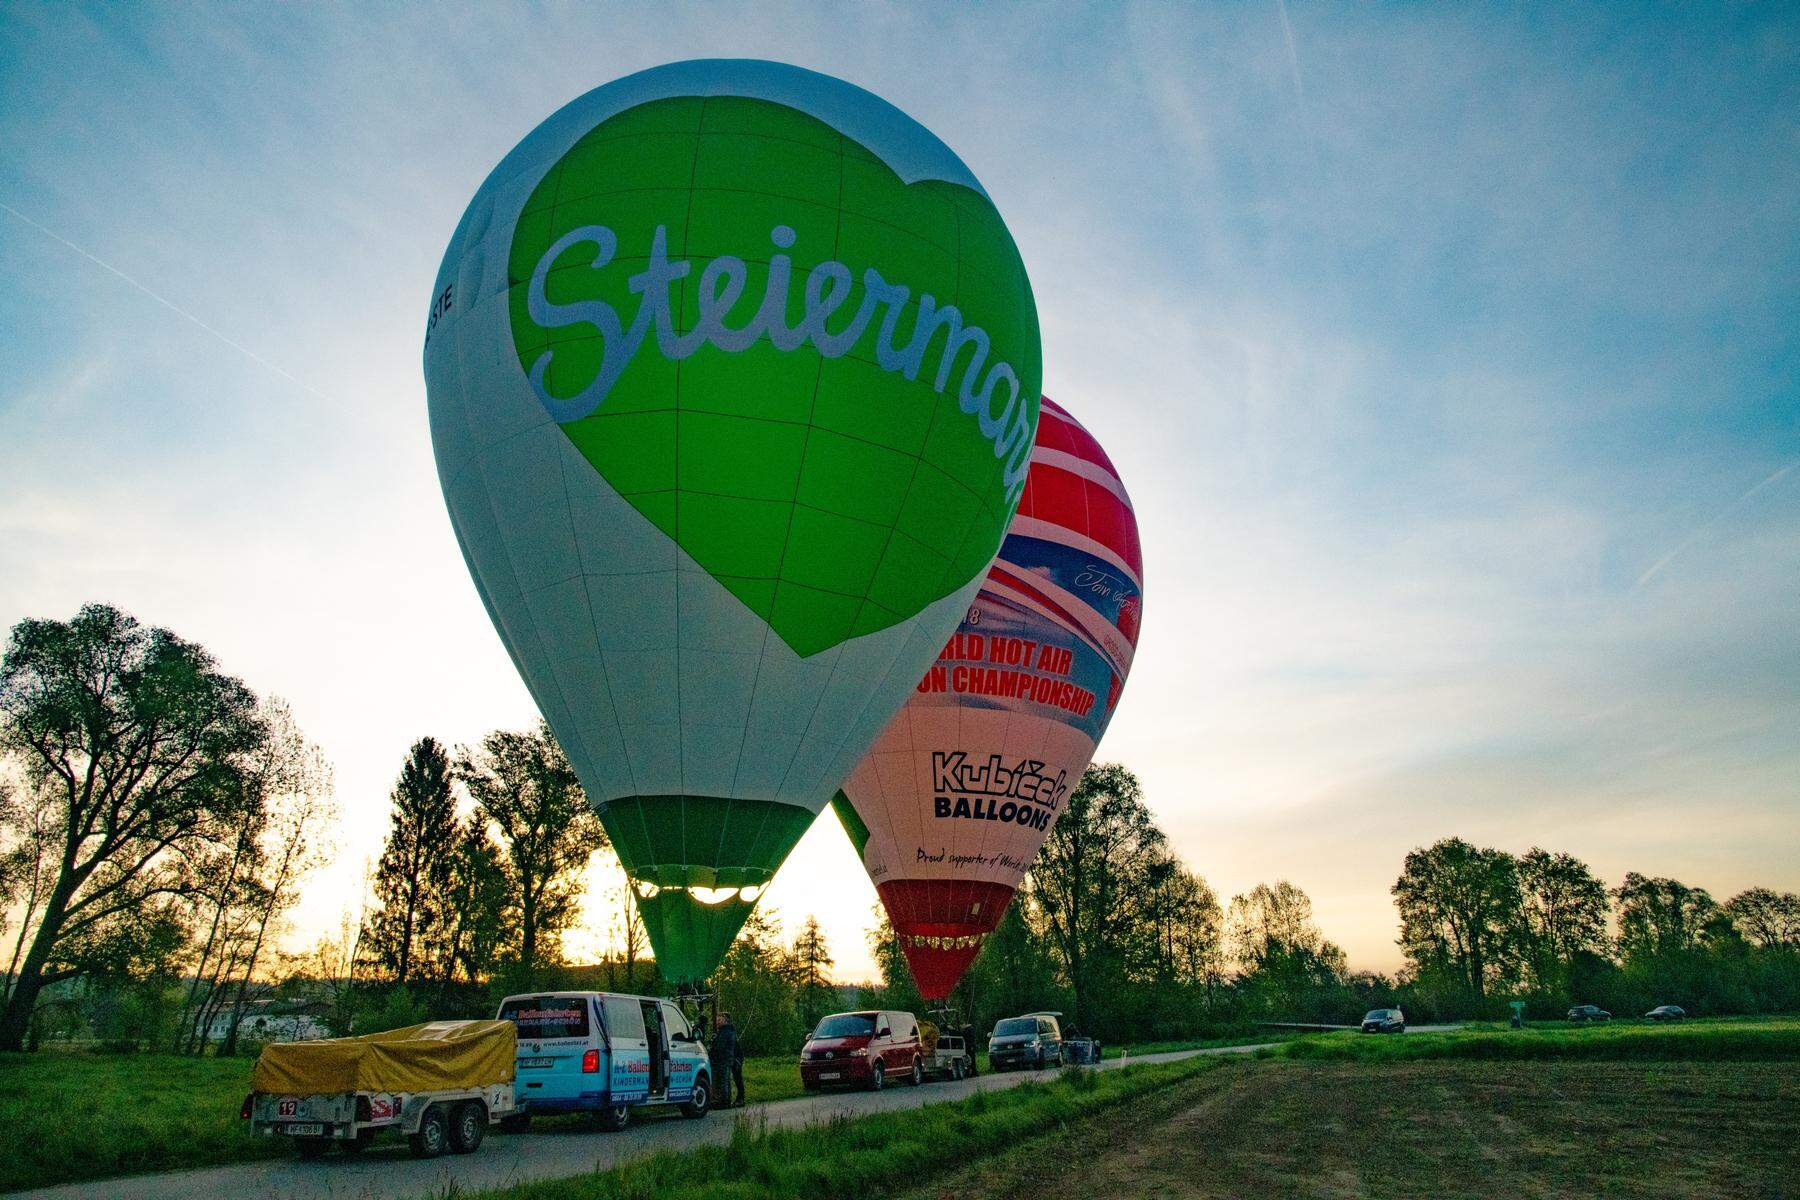 Fotos der Ballonfahrt: Ballone zierten den Himmel 